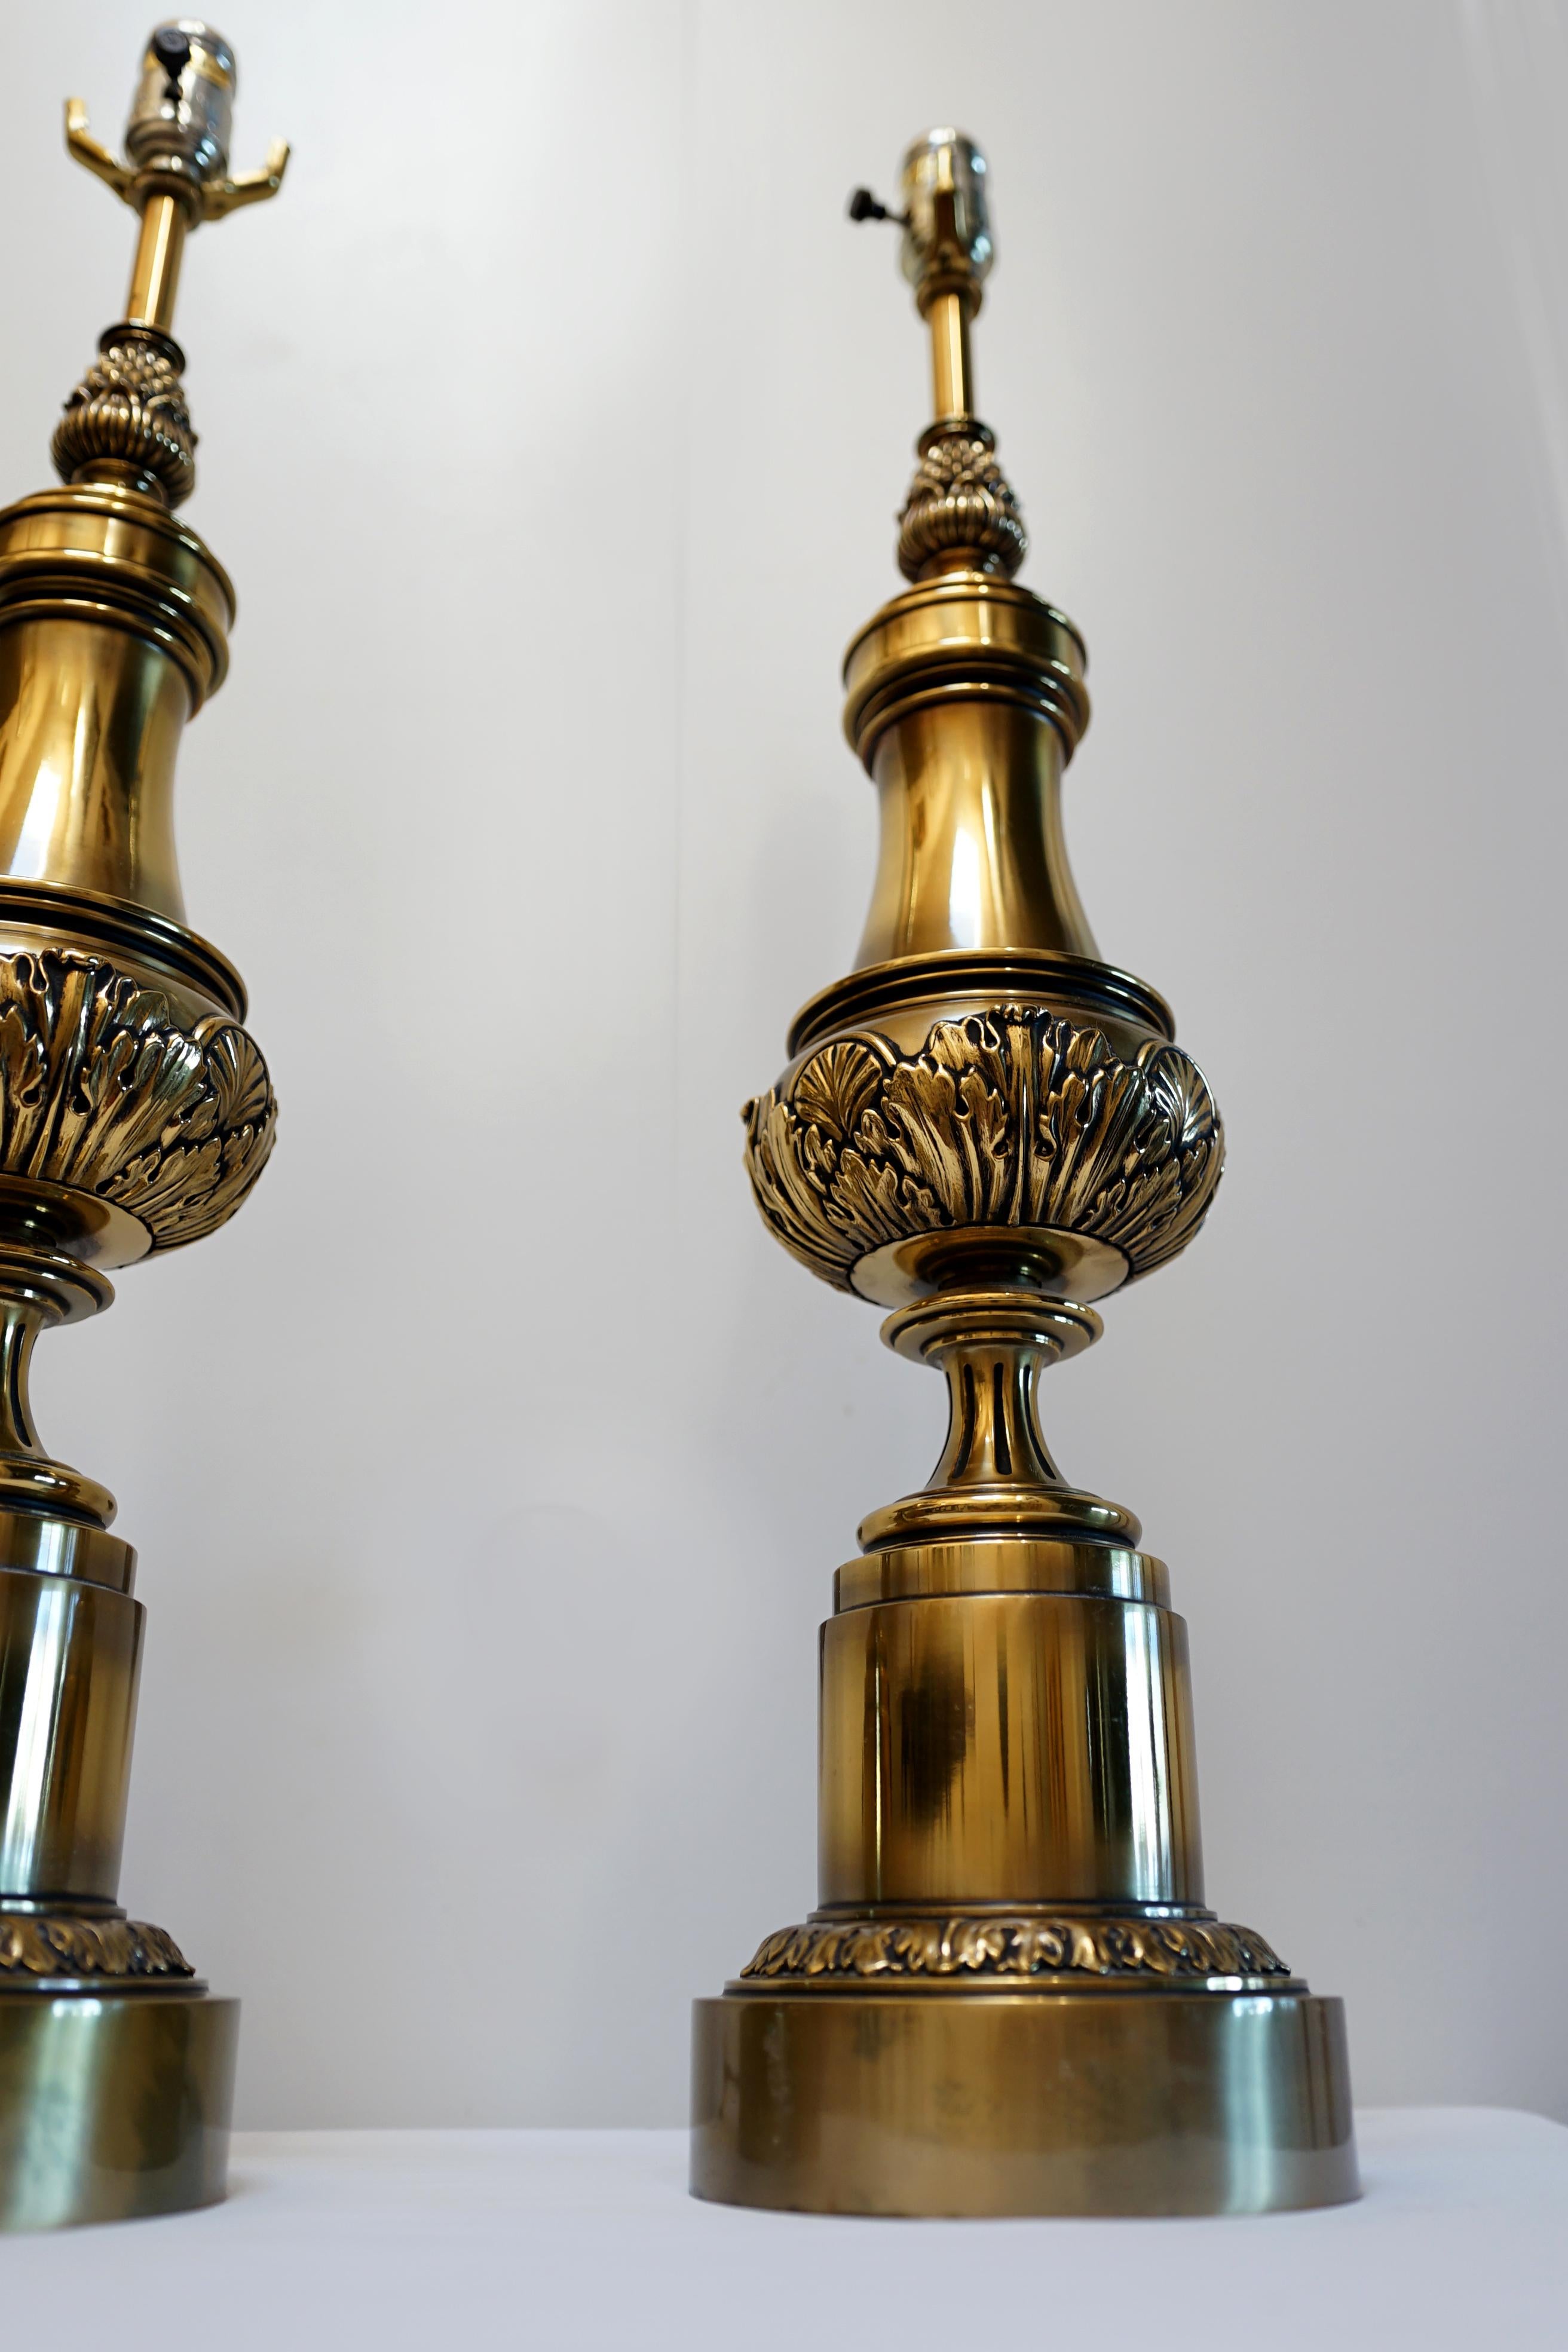 Dies ist ein außergewöhnliches Paar Stiffel-Lampen in Größe, Design und Präsenz. Bei dem Paar handelt es sich um Stiffel-Messing-Säulenlampen aus der Mitte bis zum Ende des 20. Jahrhunderts. Sie sind eine Bereicherung für die Dekoration. Es hat